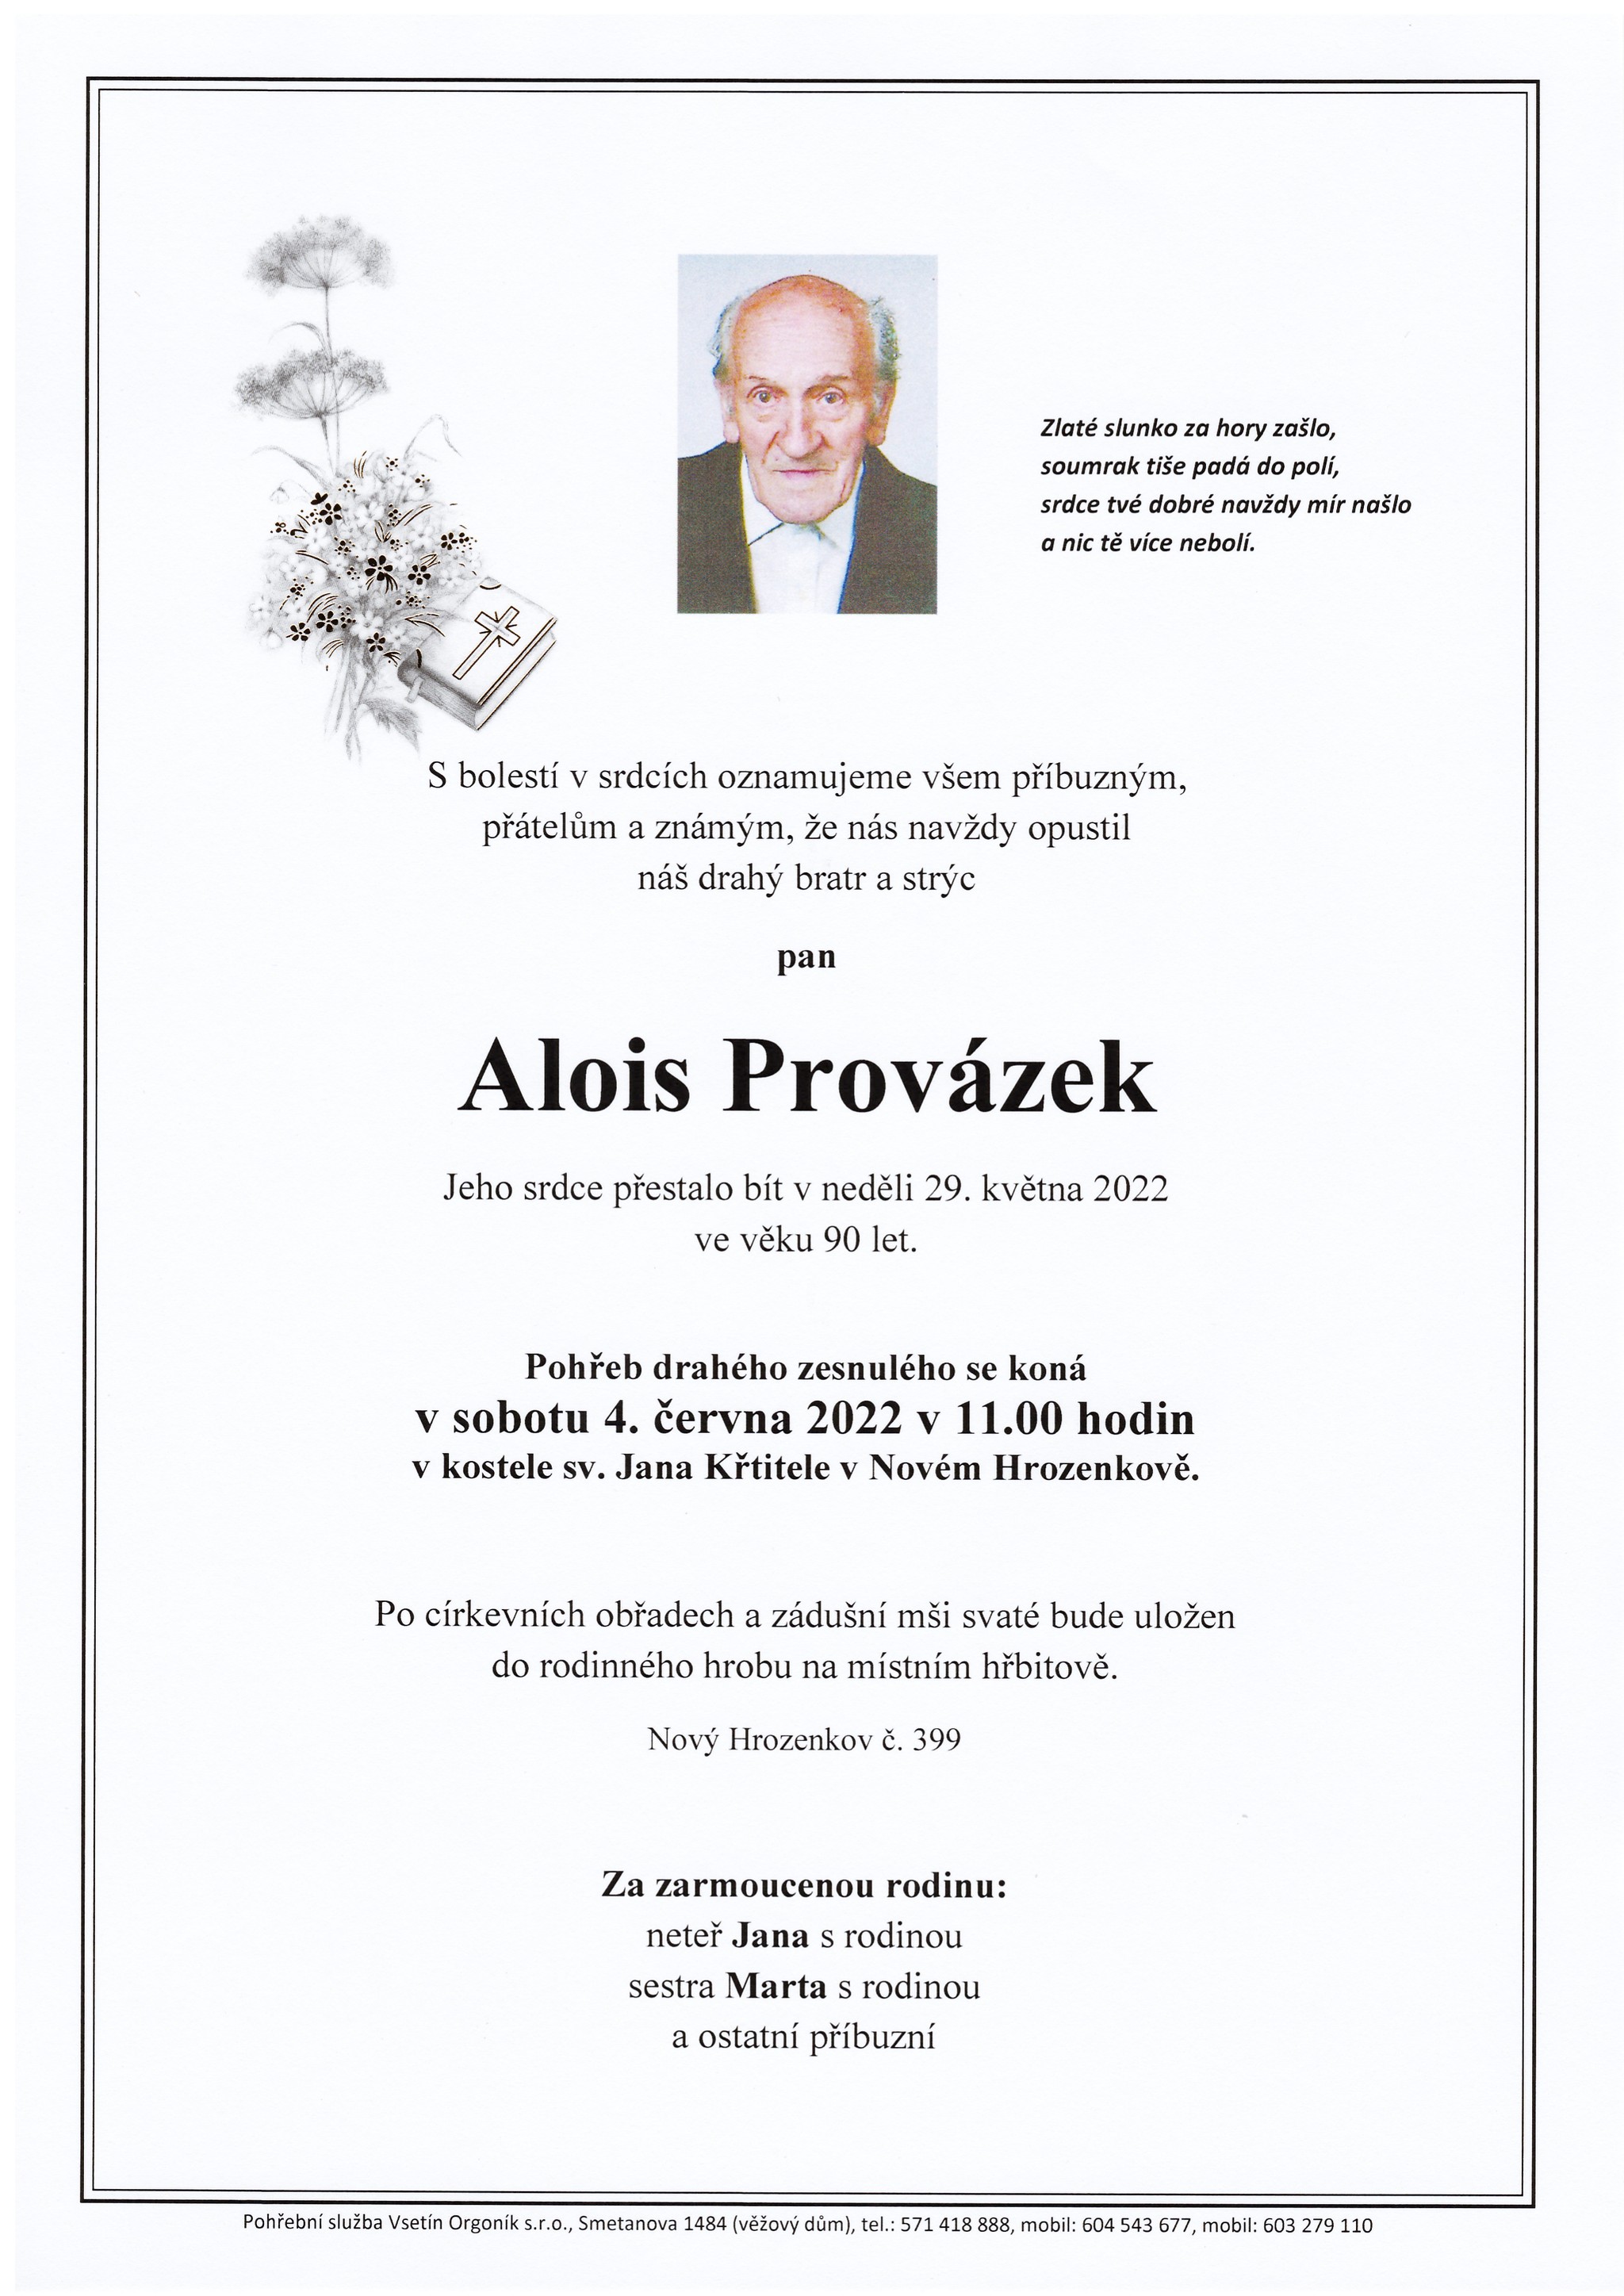 Alois Provázek